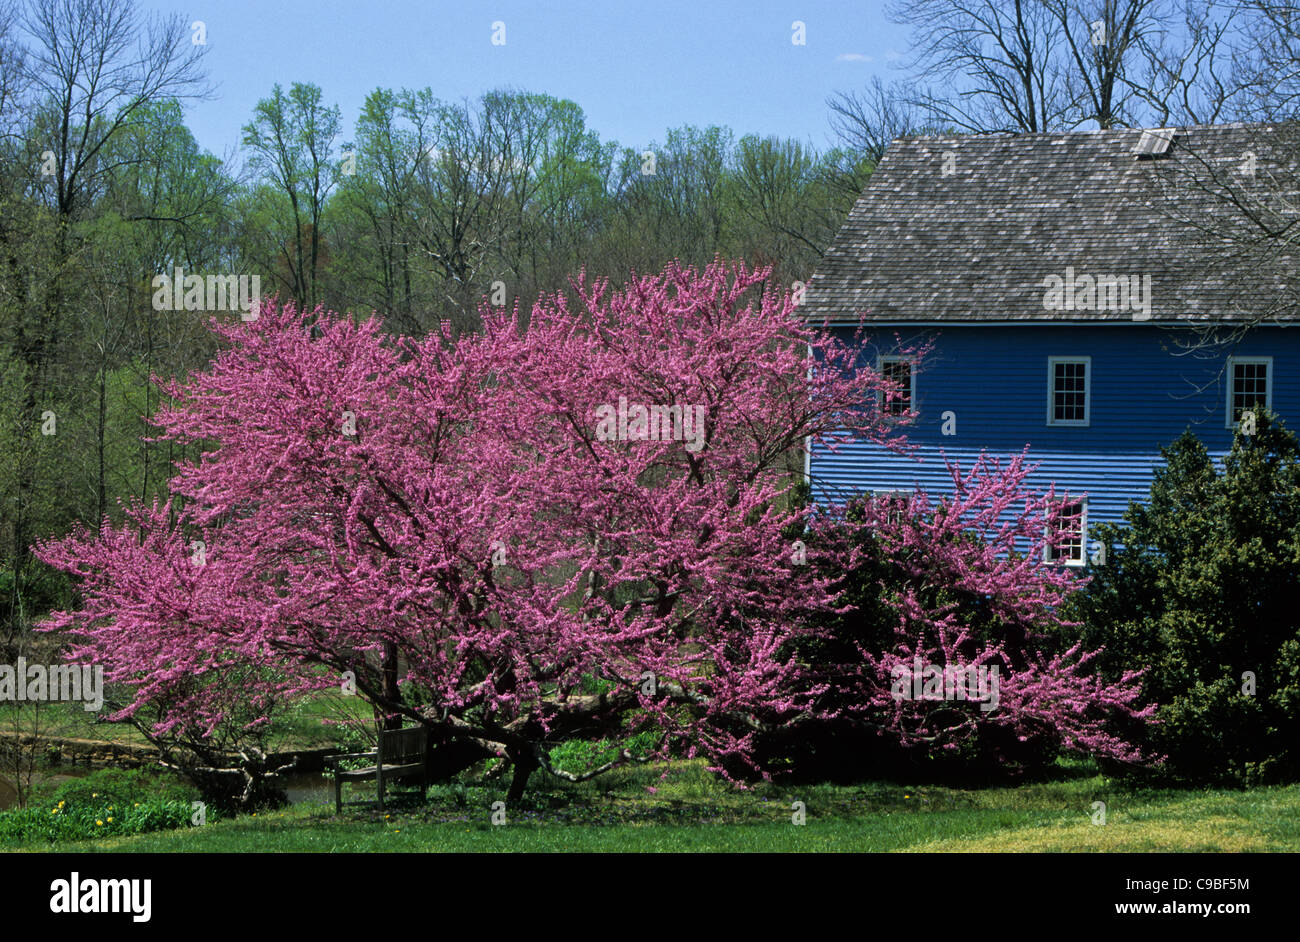 Blühender Redbud-Baum, historische blaue Walnford-Mühle-Scheune in Upper Freehhold Twp., New Jersey, USA, Monmouth County, Landschaft, Maismühle Farm bloss Stockfoto